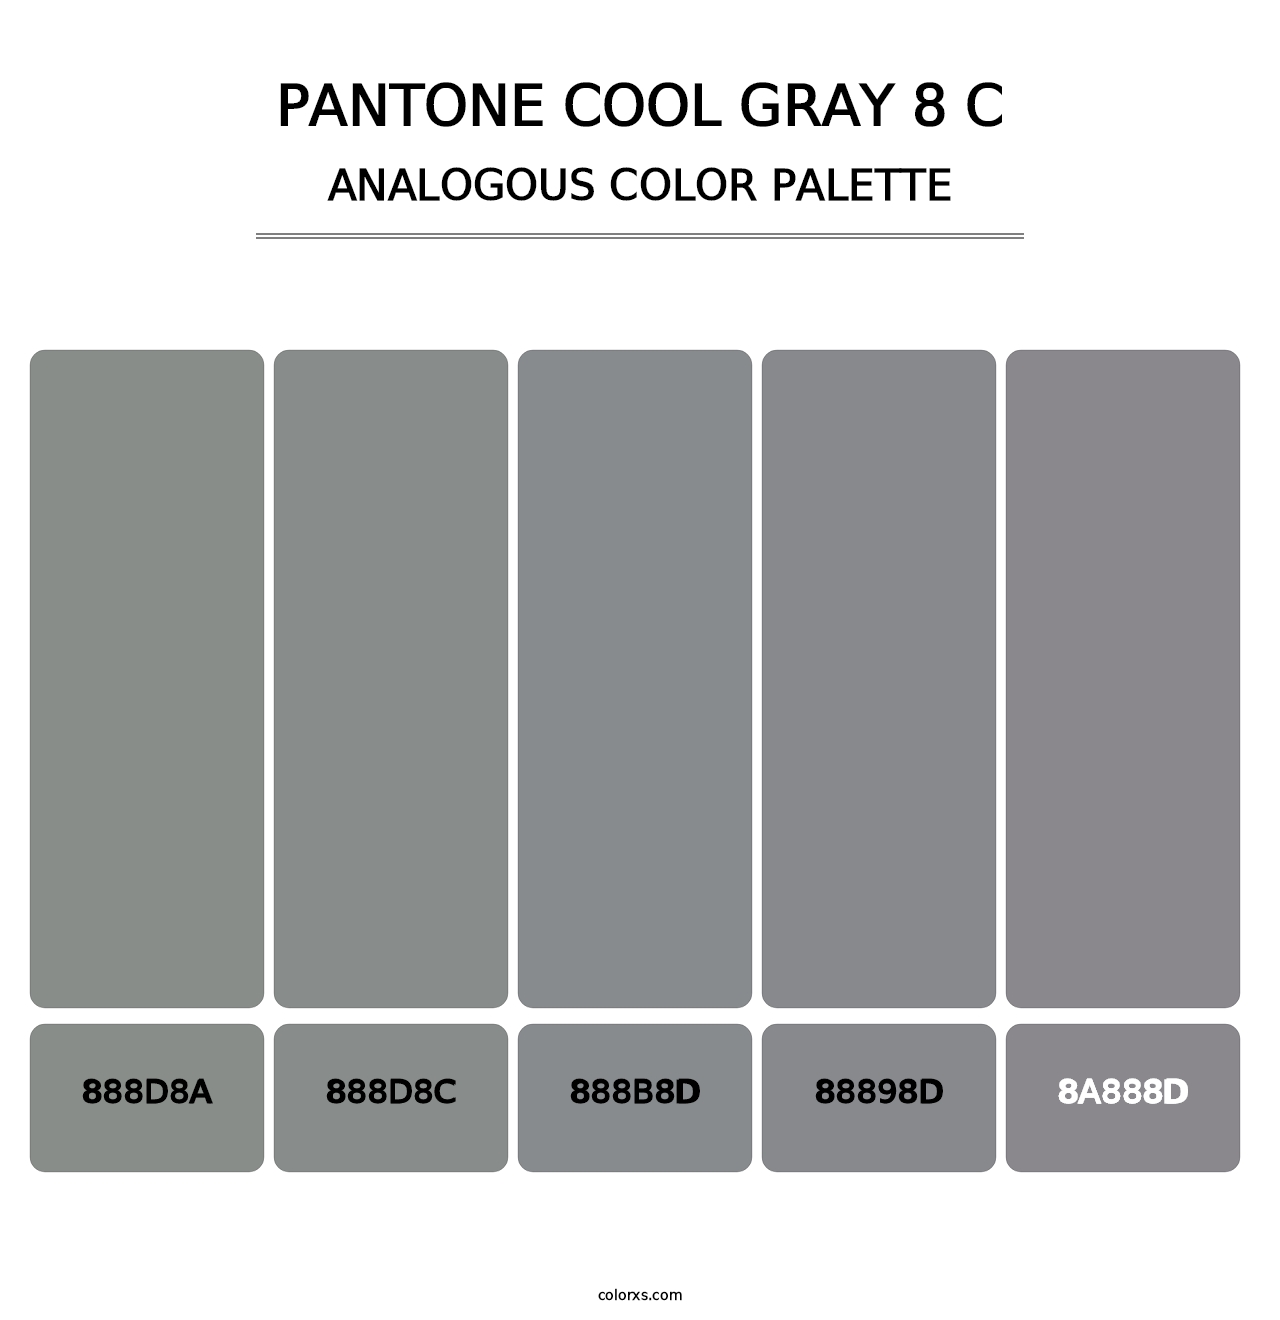 PANTONE Cool Gray 8 C - Analogous Color Palette